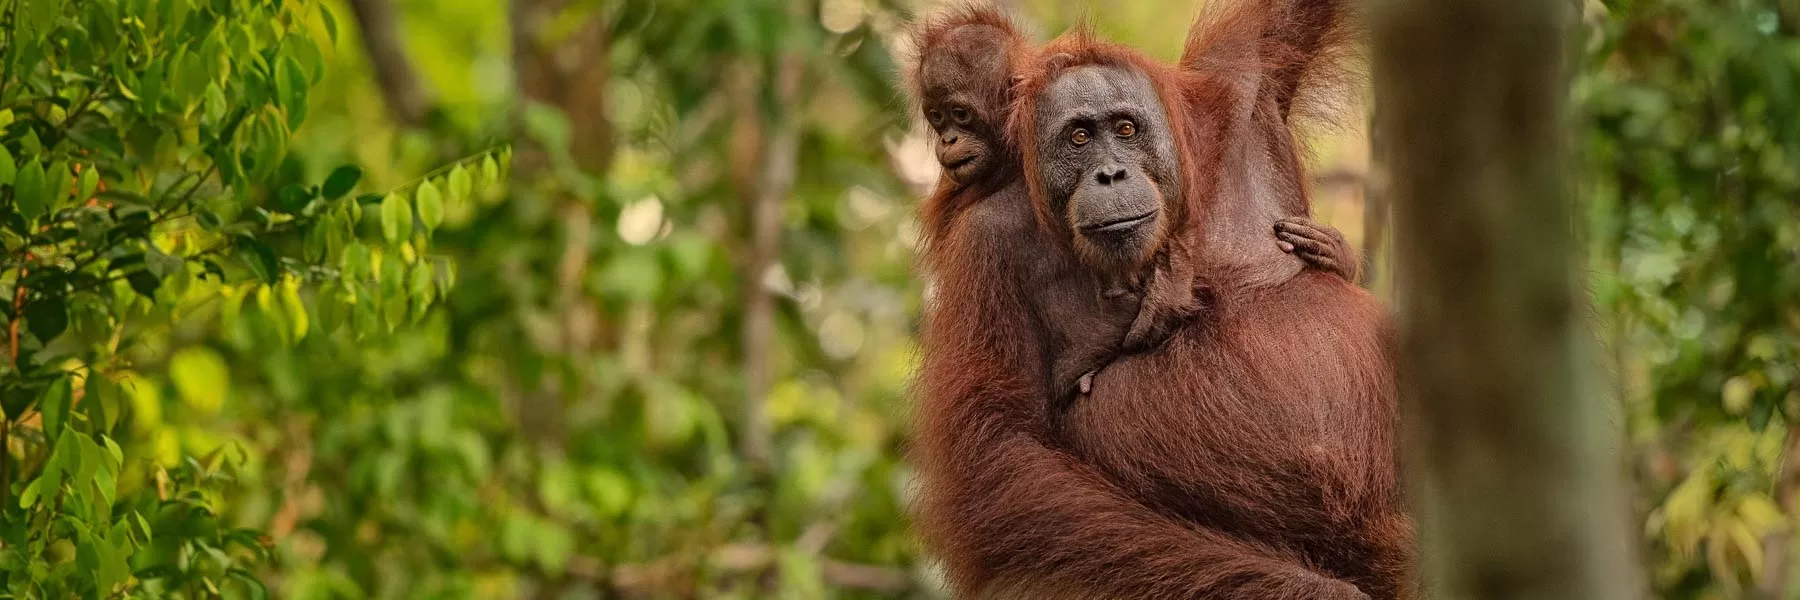 Where to find Orangutans in Borneo